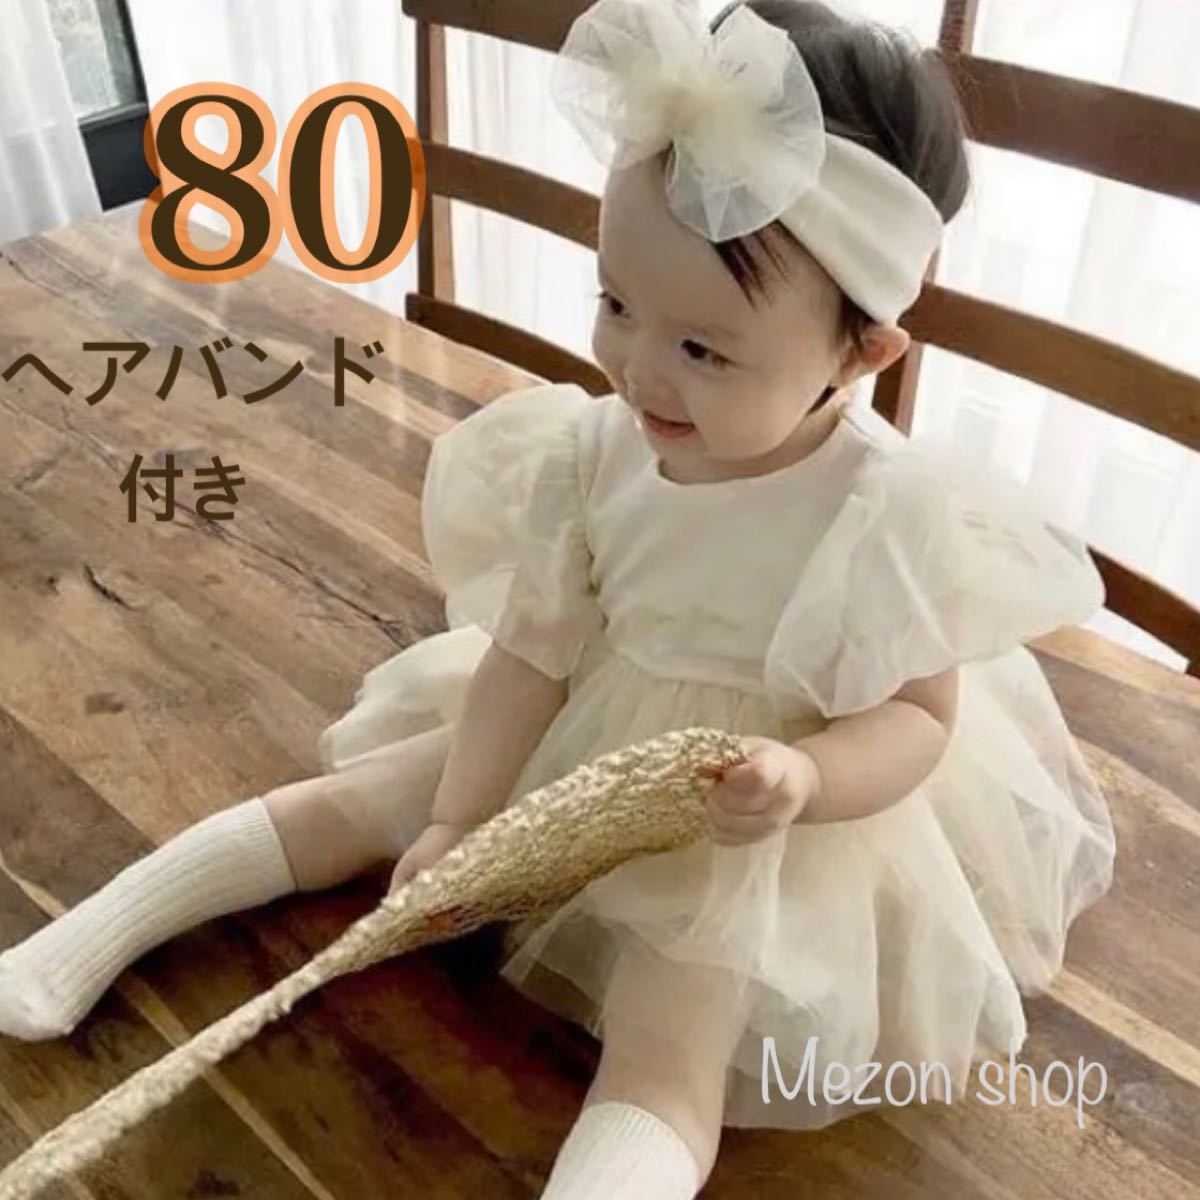 90 セレモニーベビードレス 白チュール 刺繍 レース 韓国子供服 シフォン